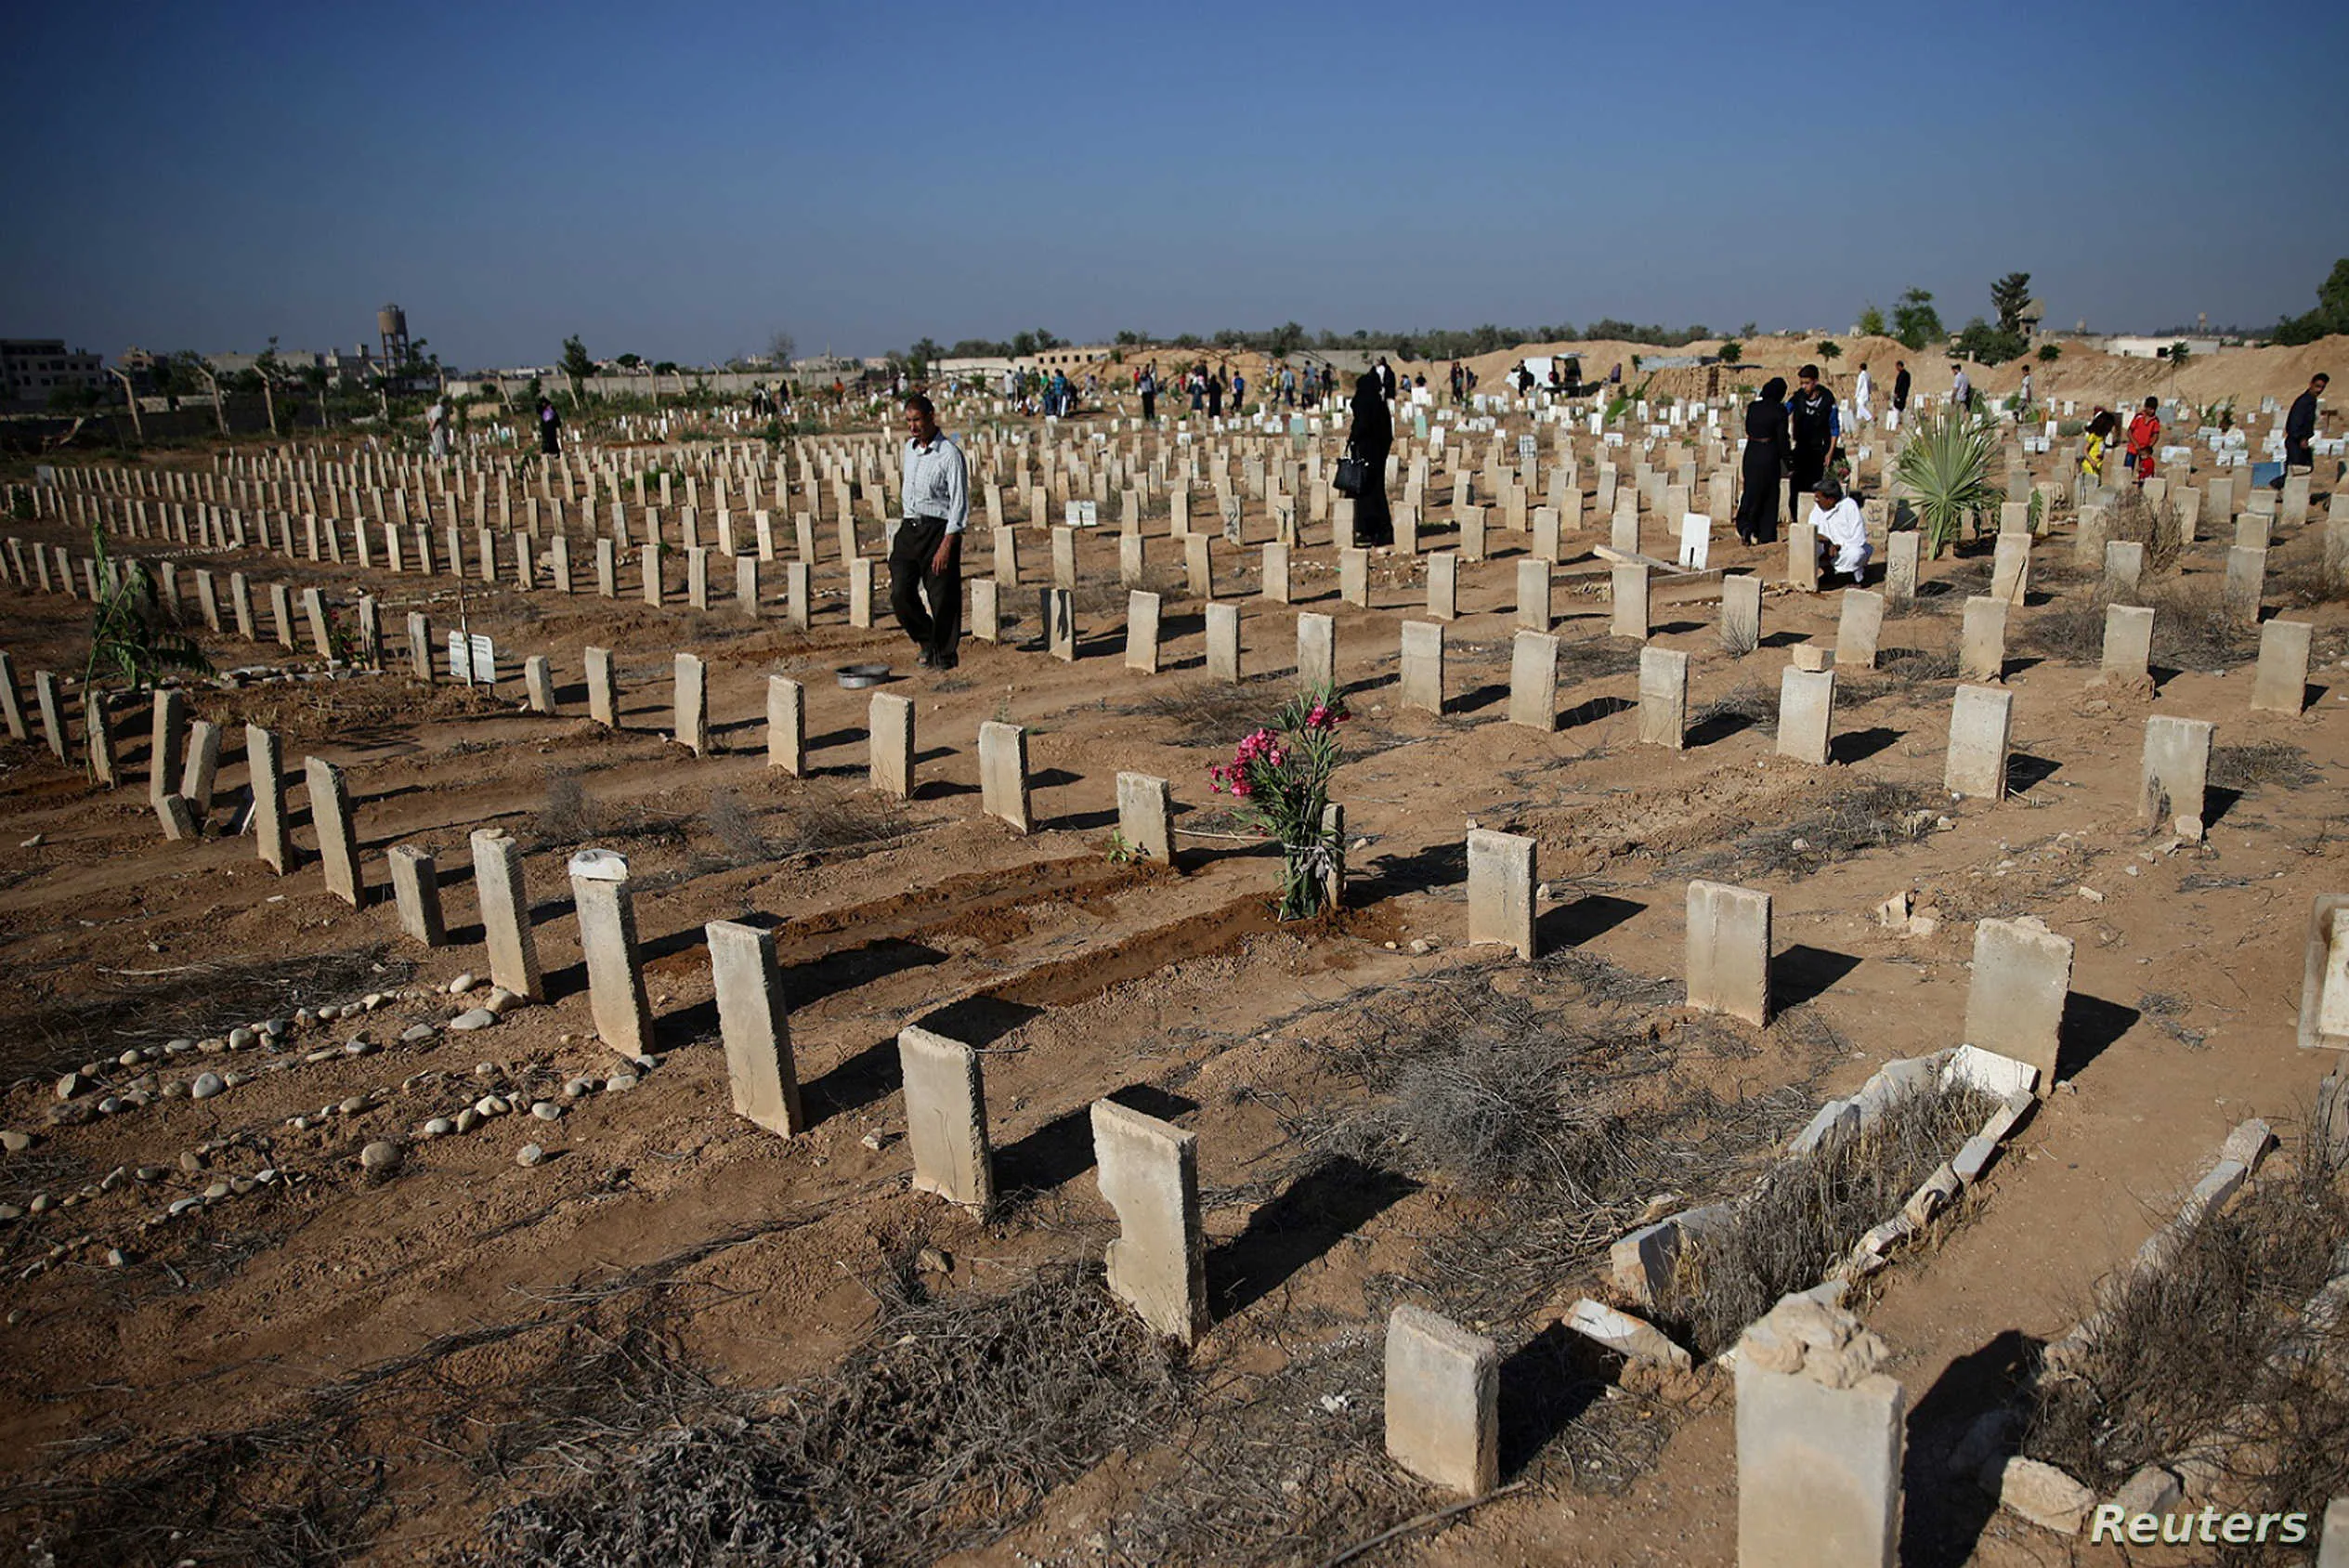 انتشار ظاهرة تزوير القبور بدمشق .. ومسؤول يكشف تكلفة القبر في "نجها"